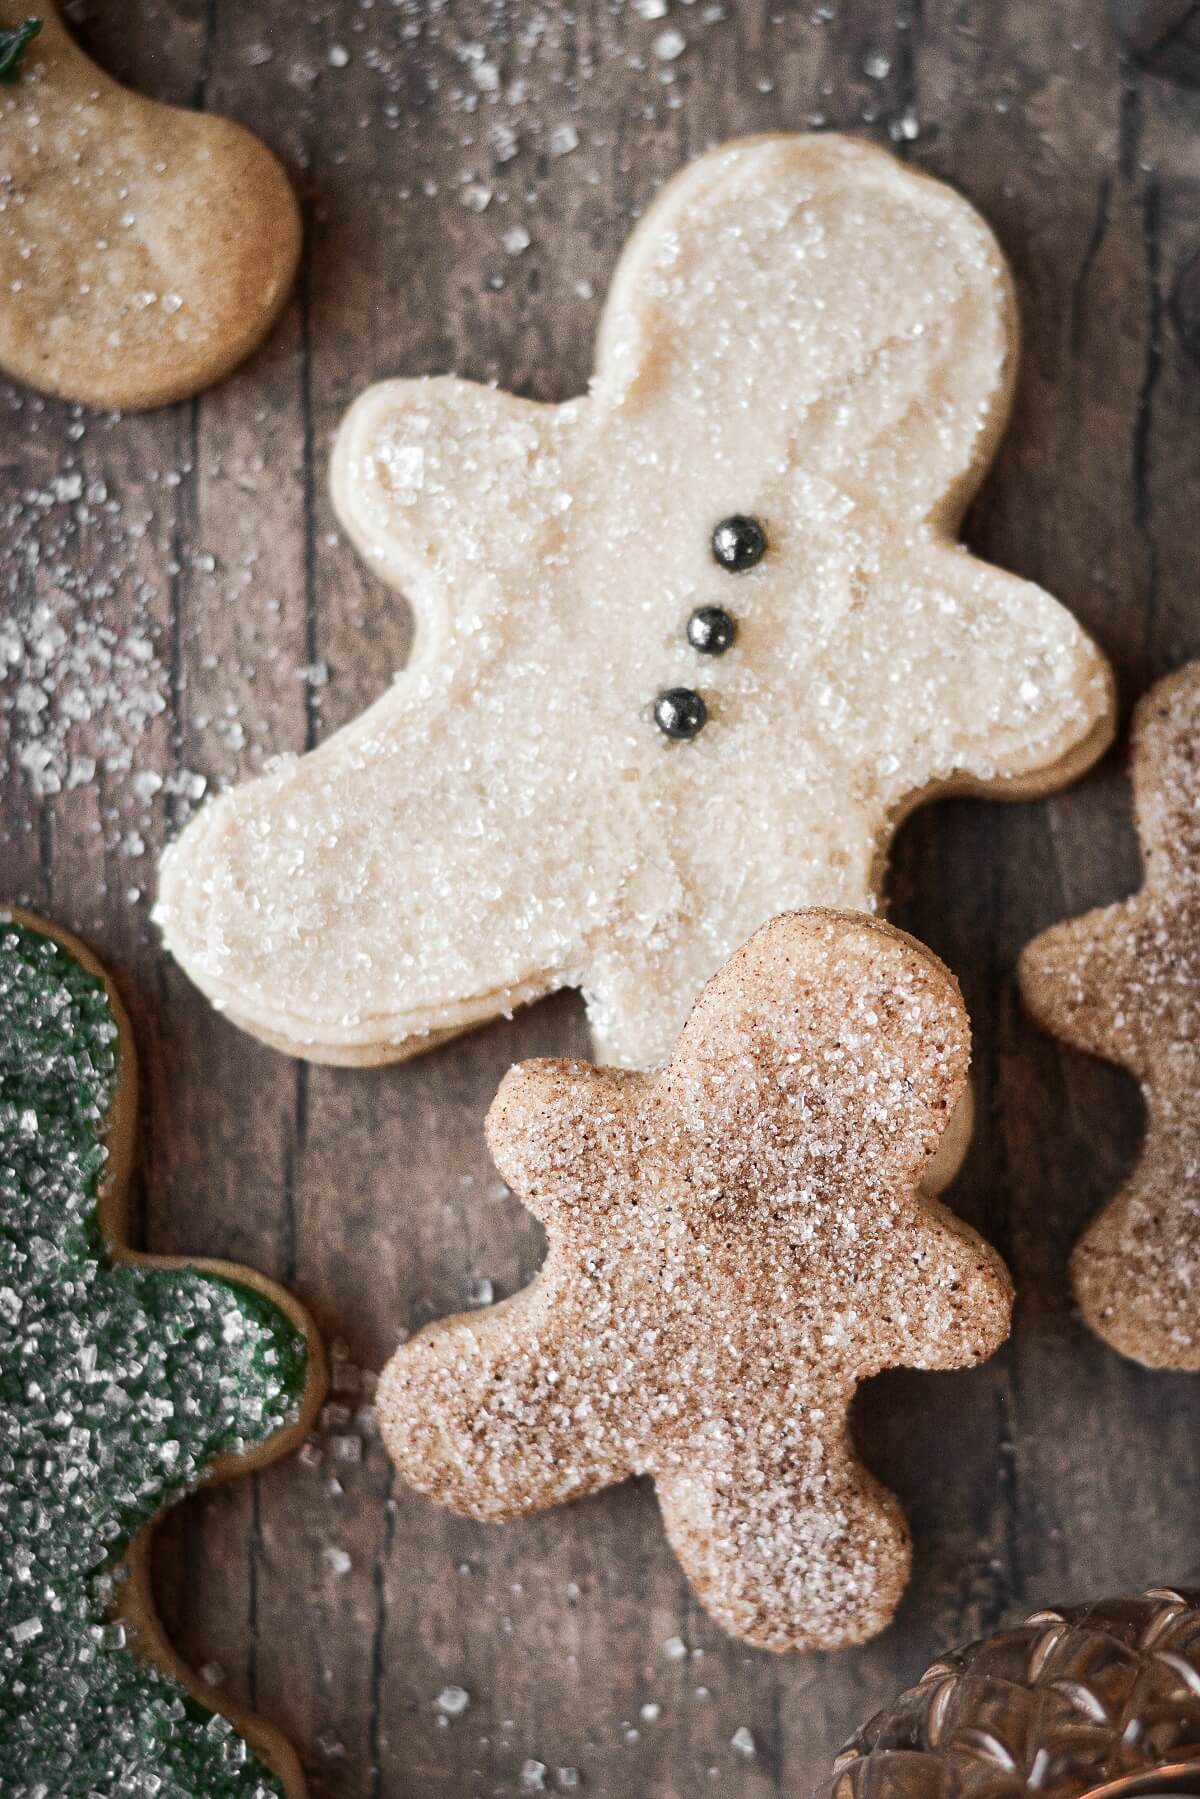 Gingerbread cookies sprinkled with sugar.